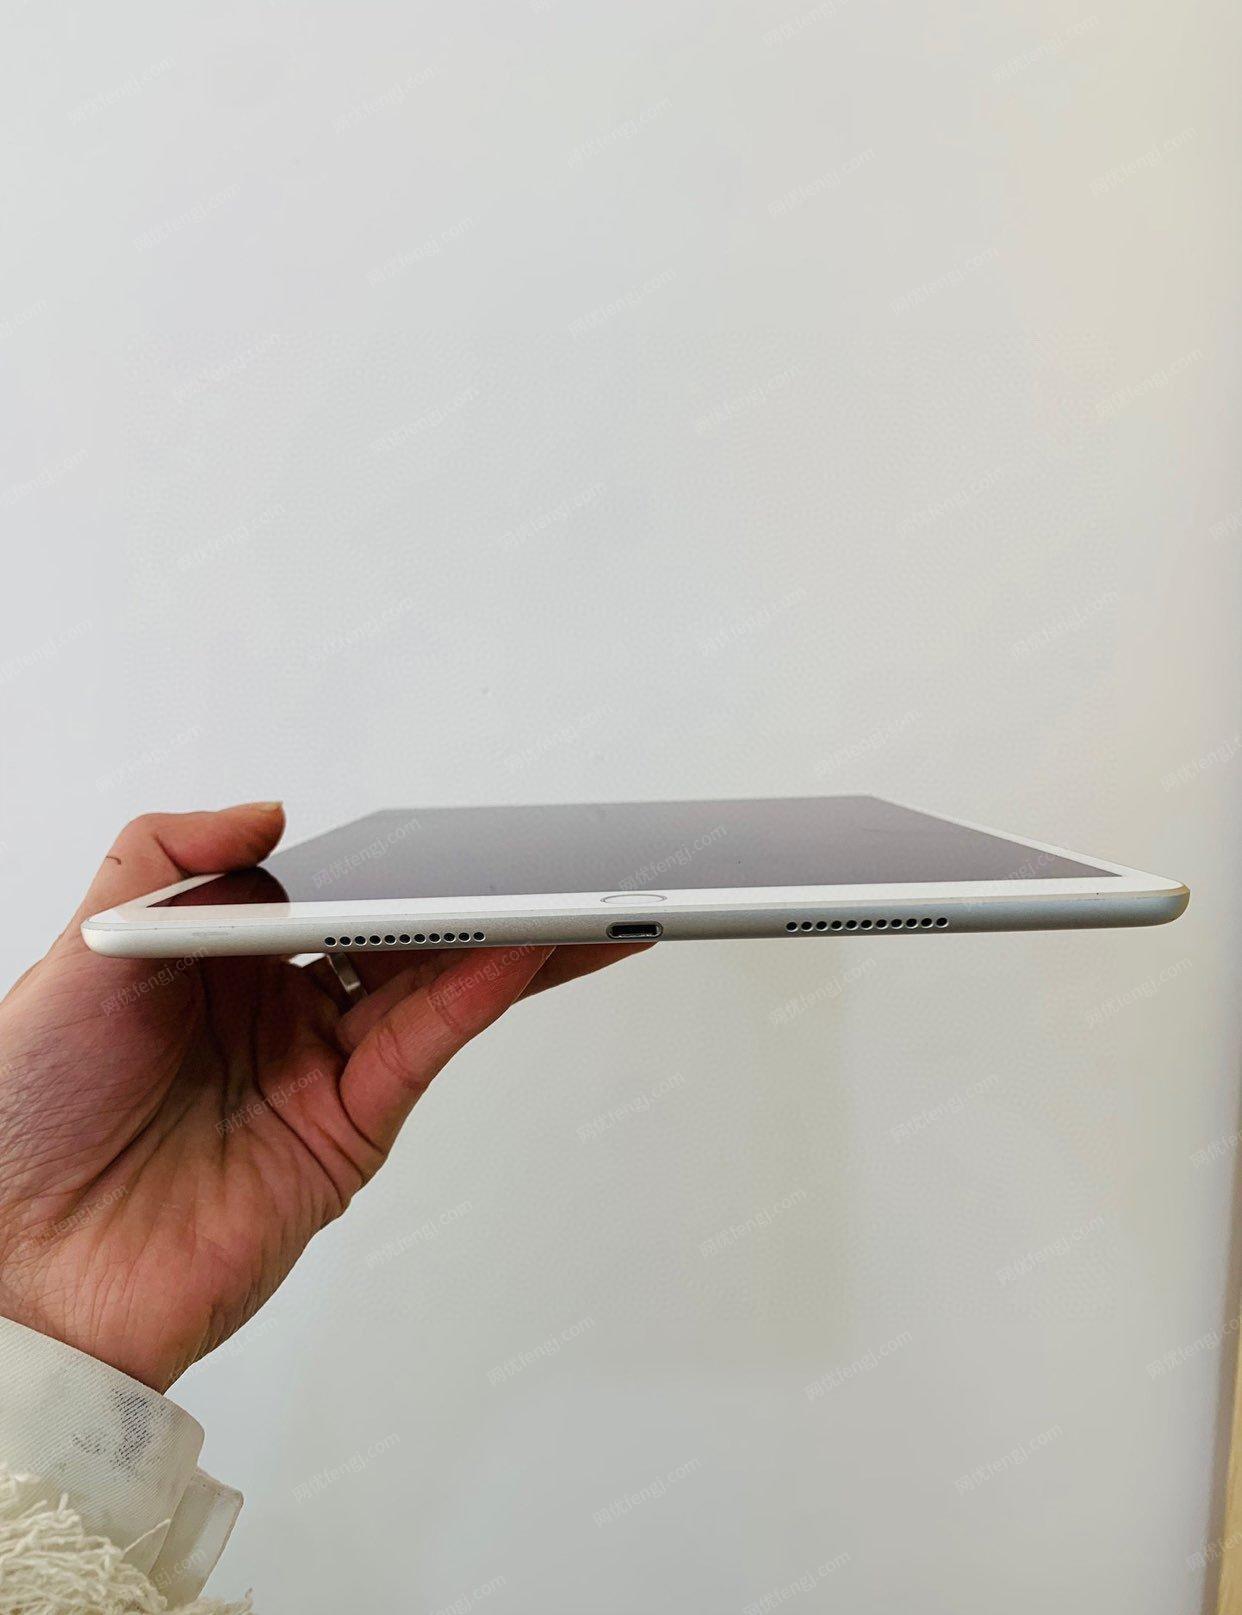 北京东城区apple ipad air3 中高端 苹果平板电脑低价出售